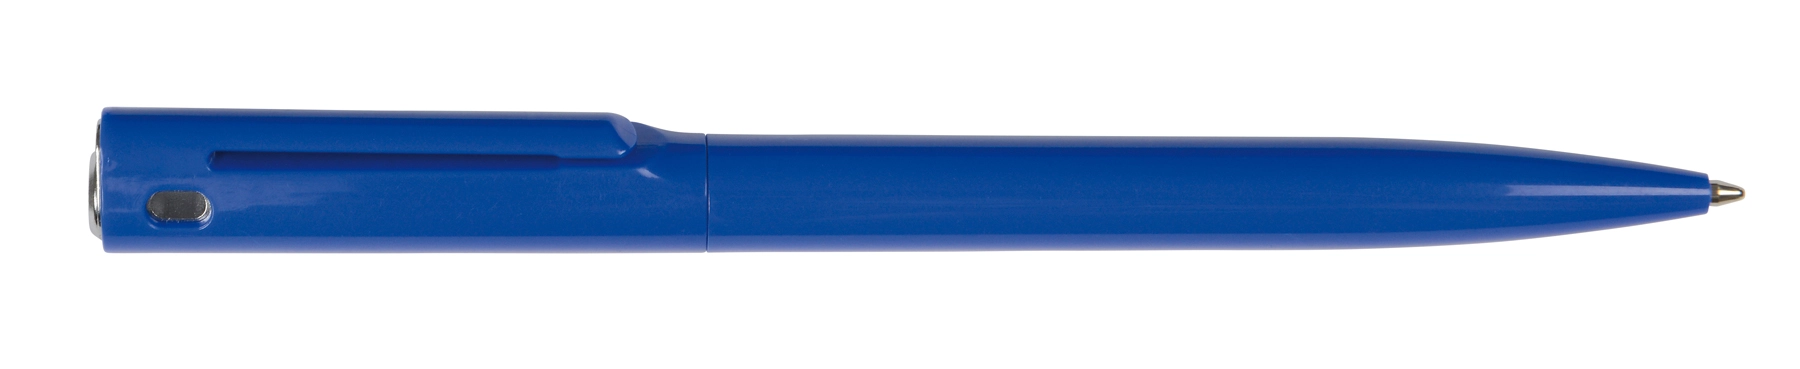 Długopis VERMONT, niebieski, srebrny 56-1102123 srebrny
